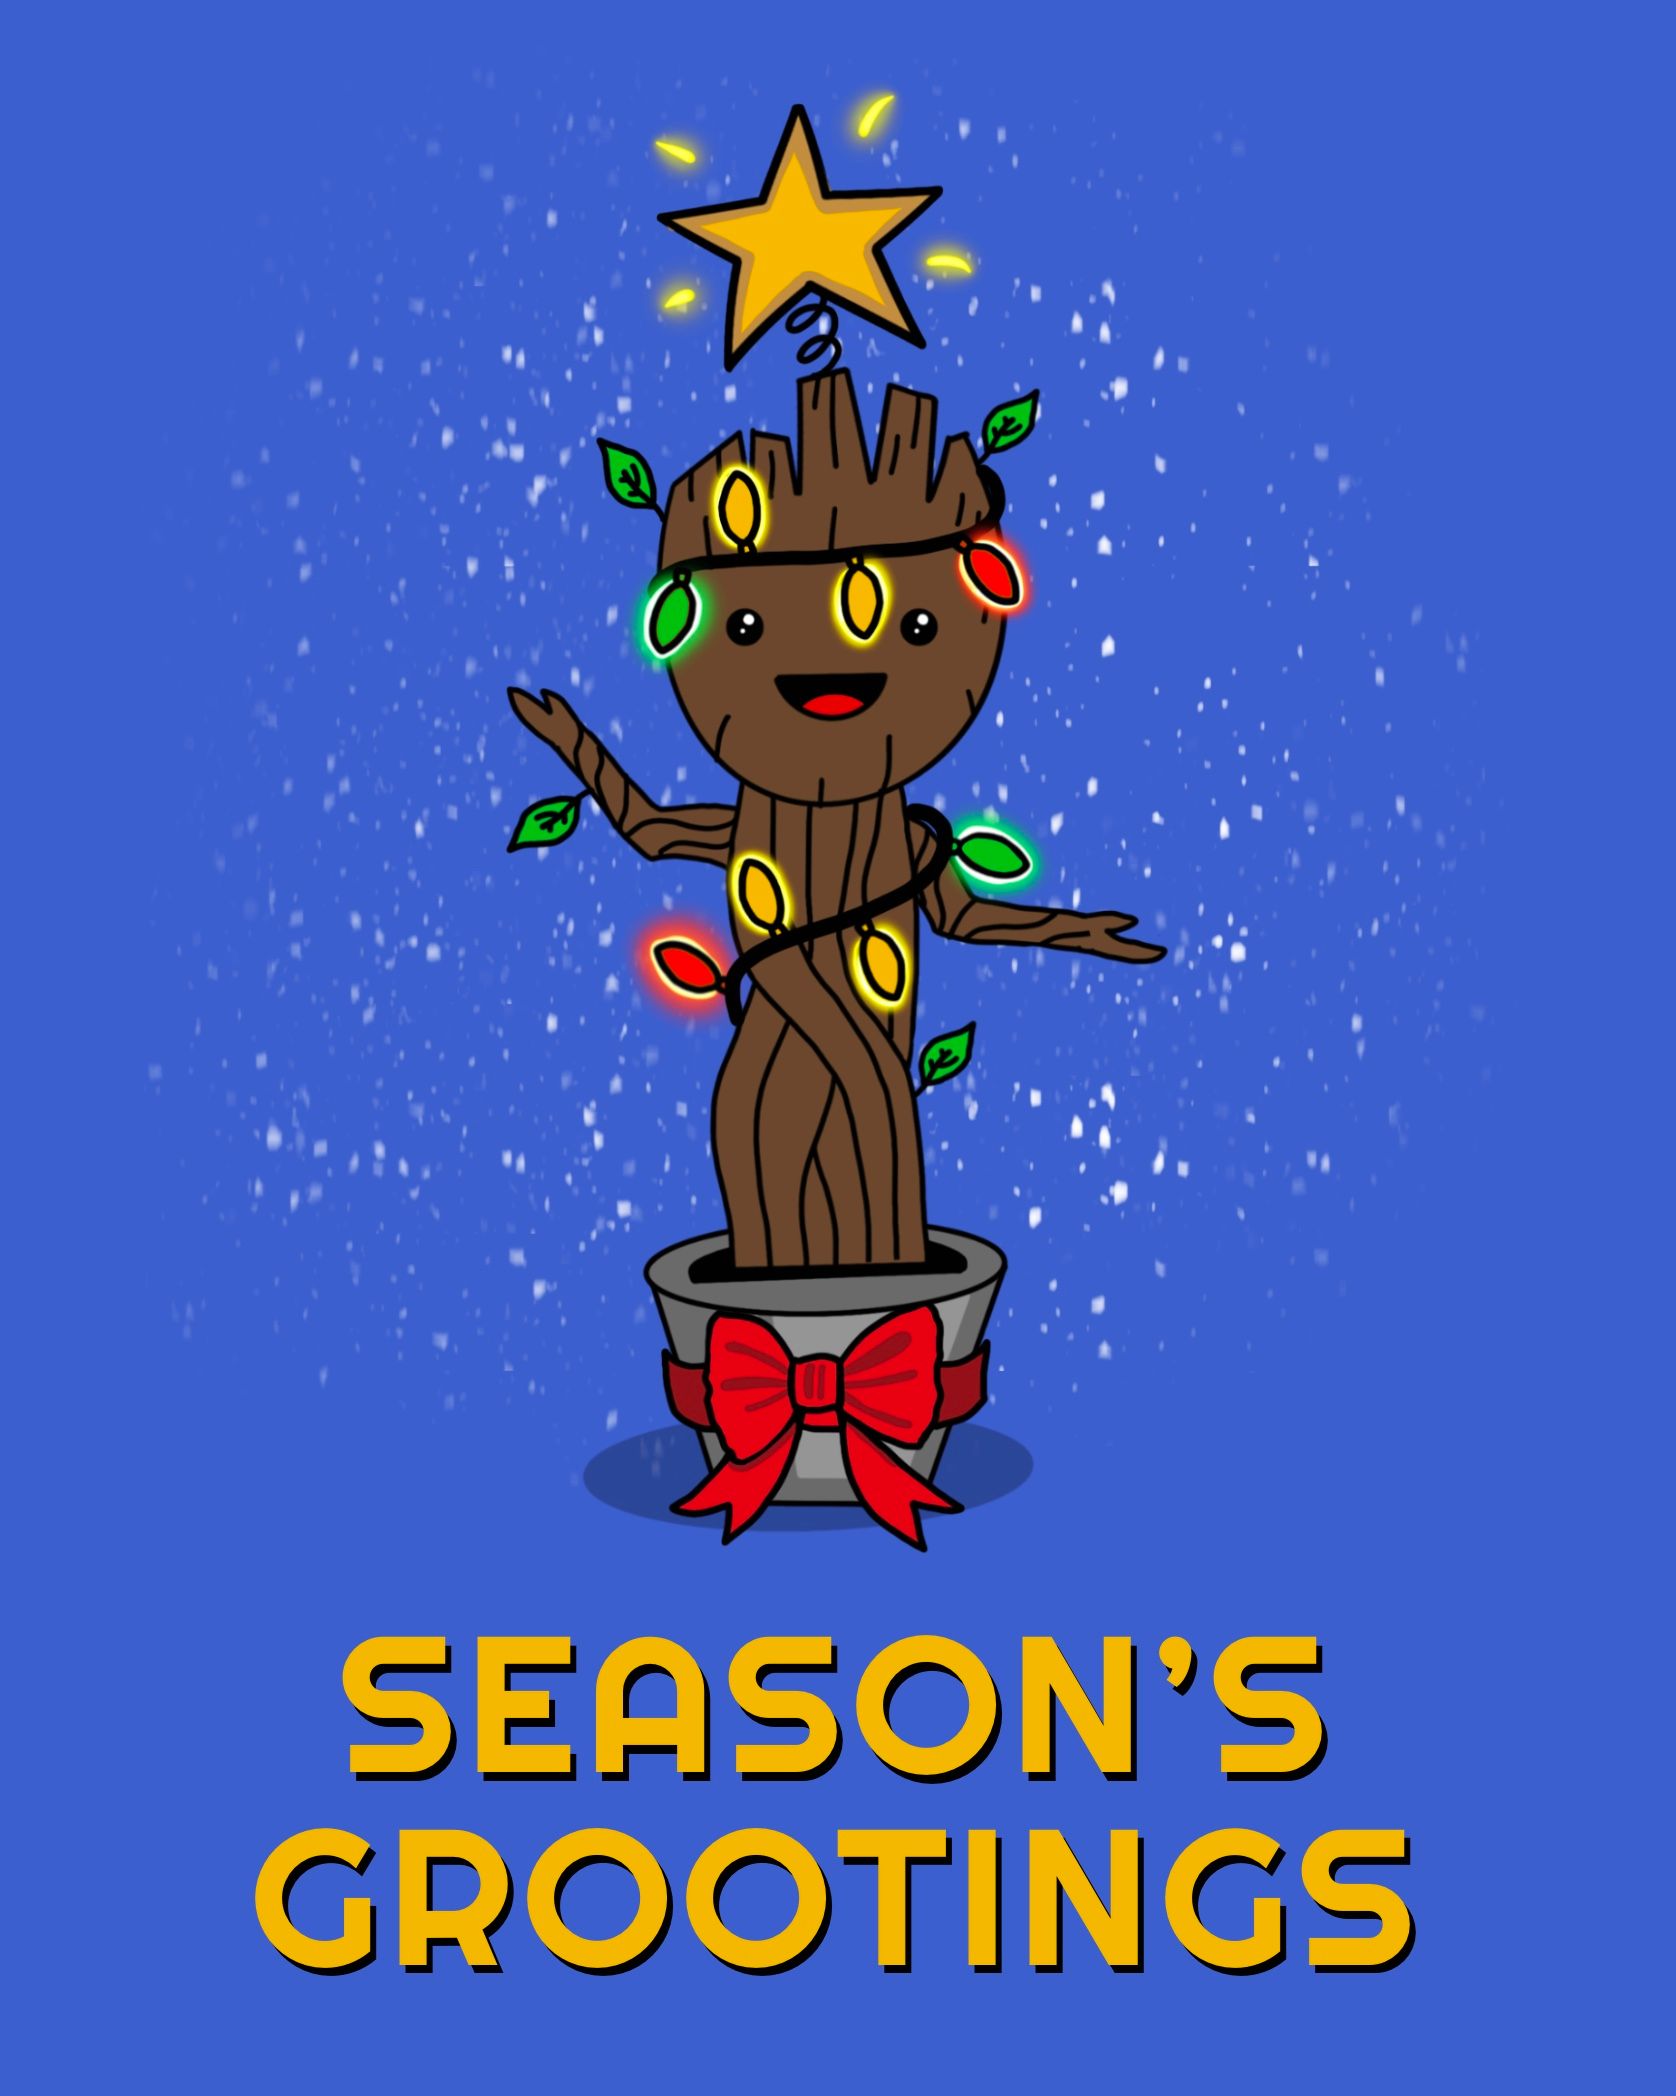 Card design "seasons grootings"